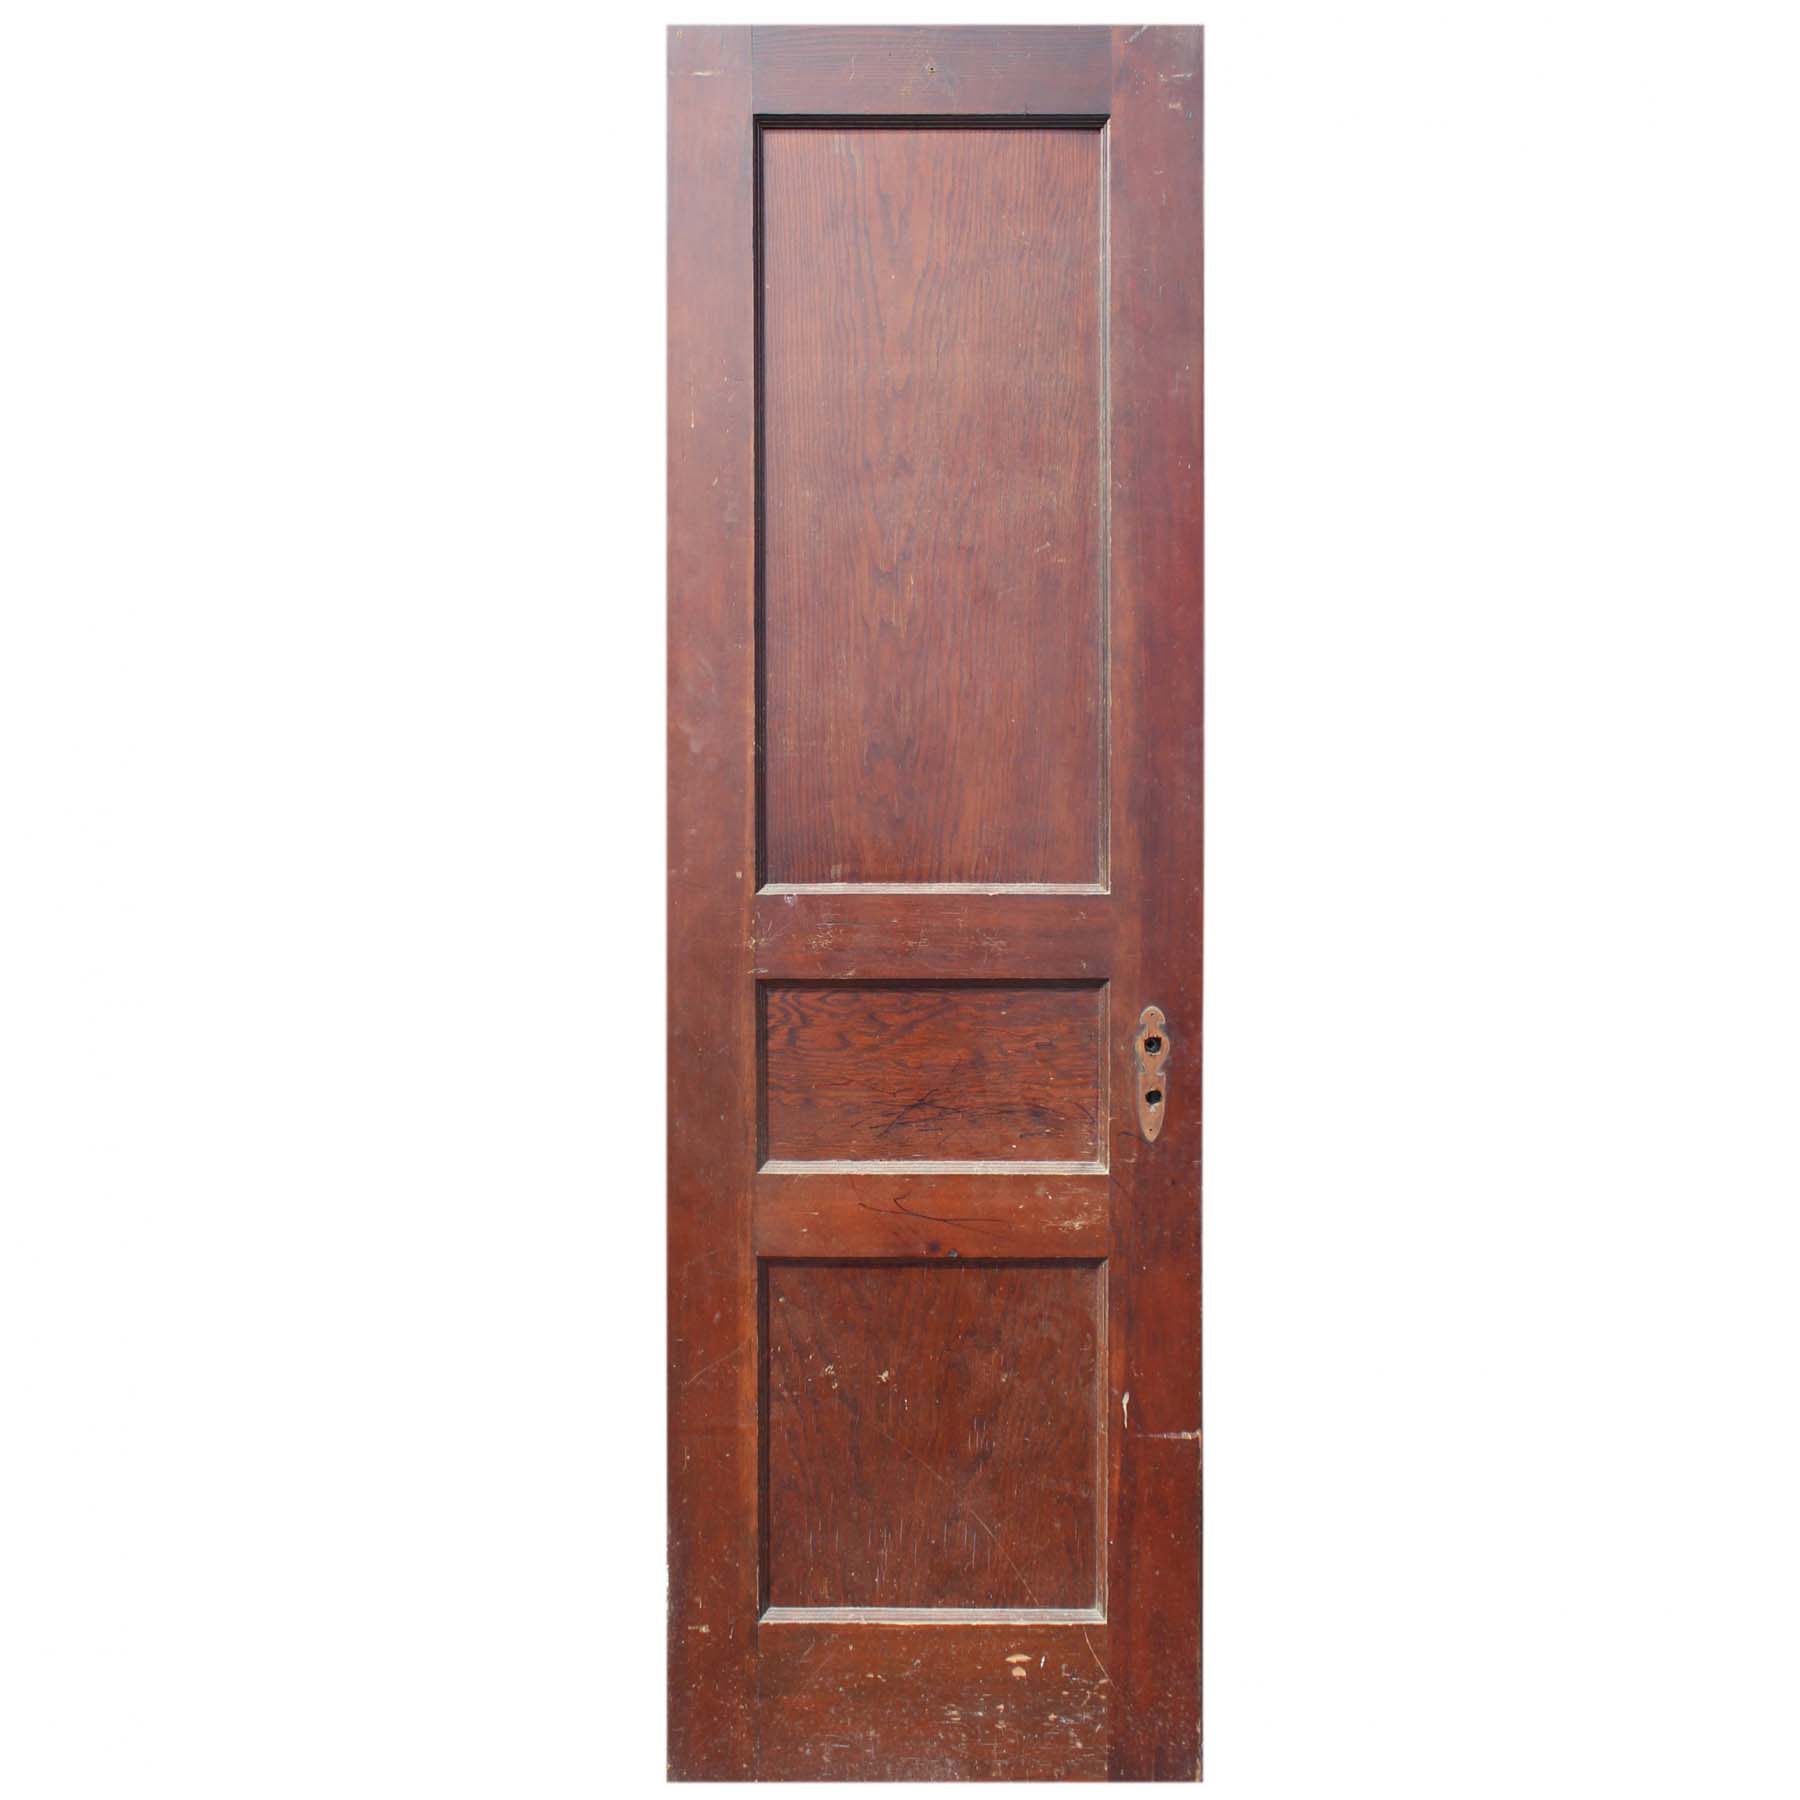 SOLD Antique 24” Three-Panel Solid Wood Door-0